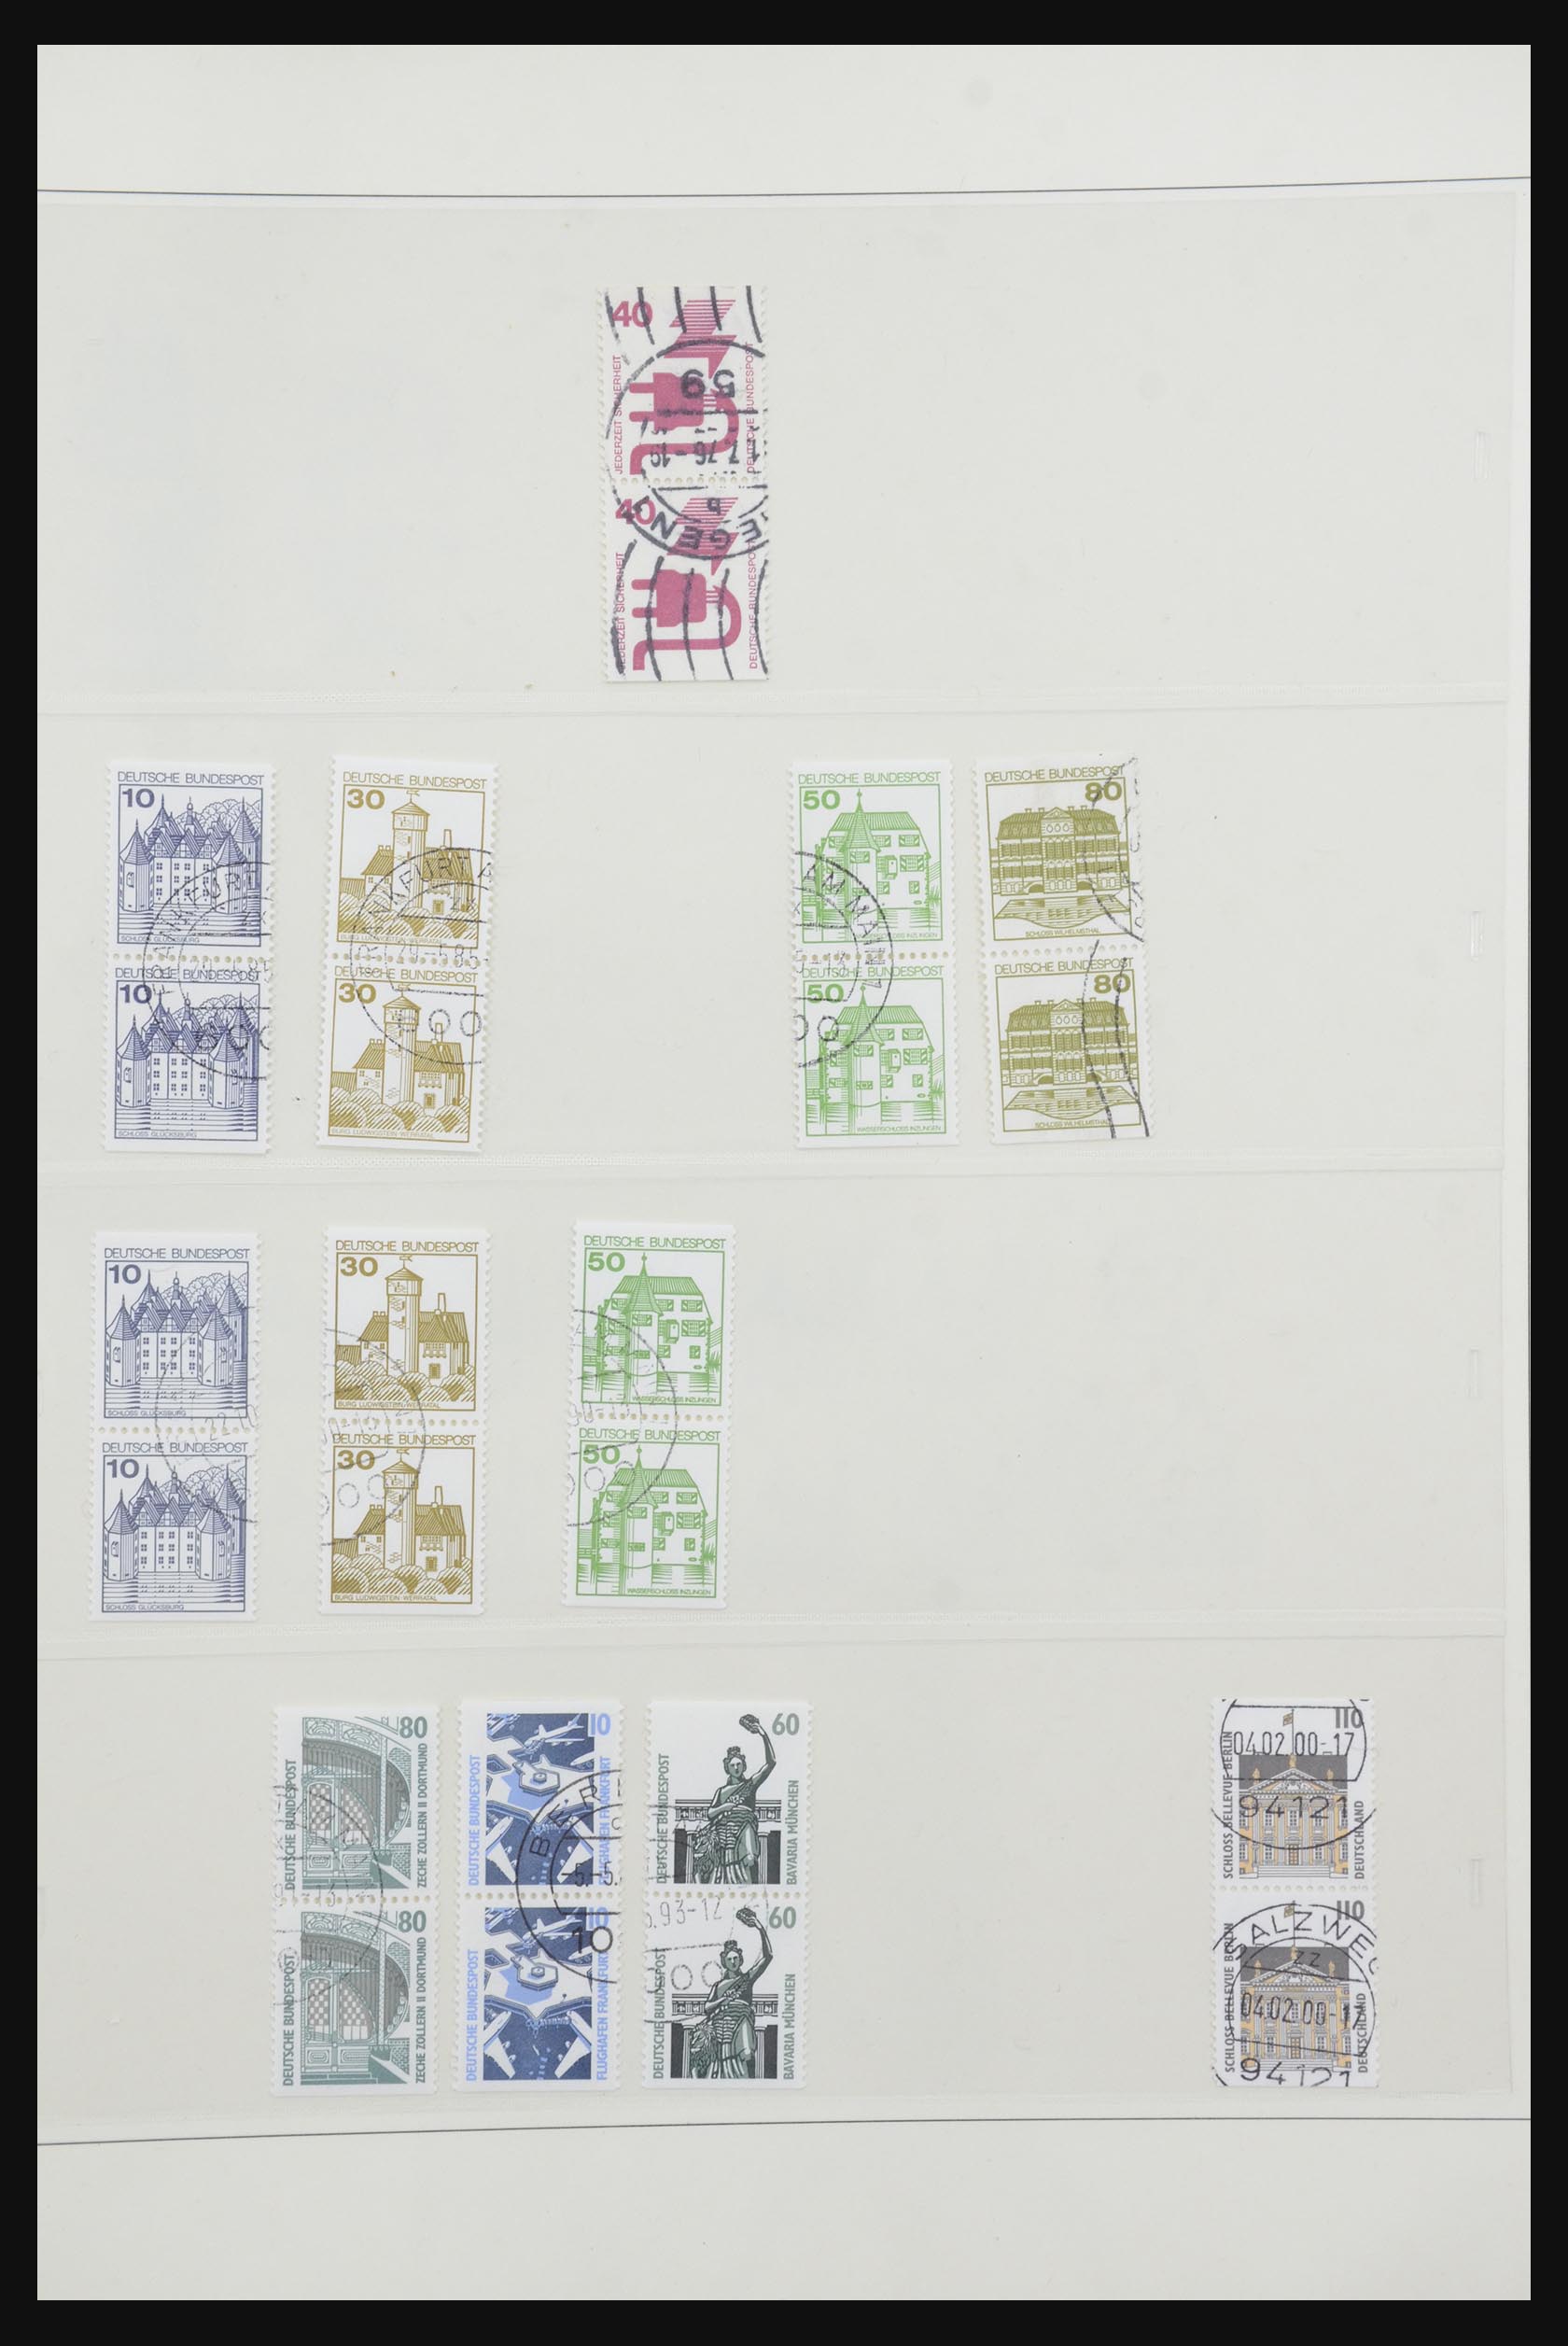 31842 088 - 31842 Bundespost combinaties 1951-2003.